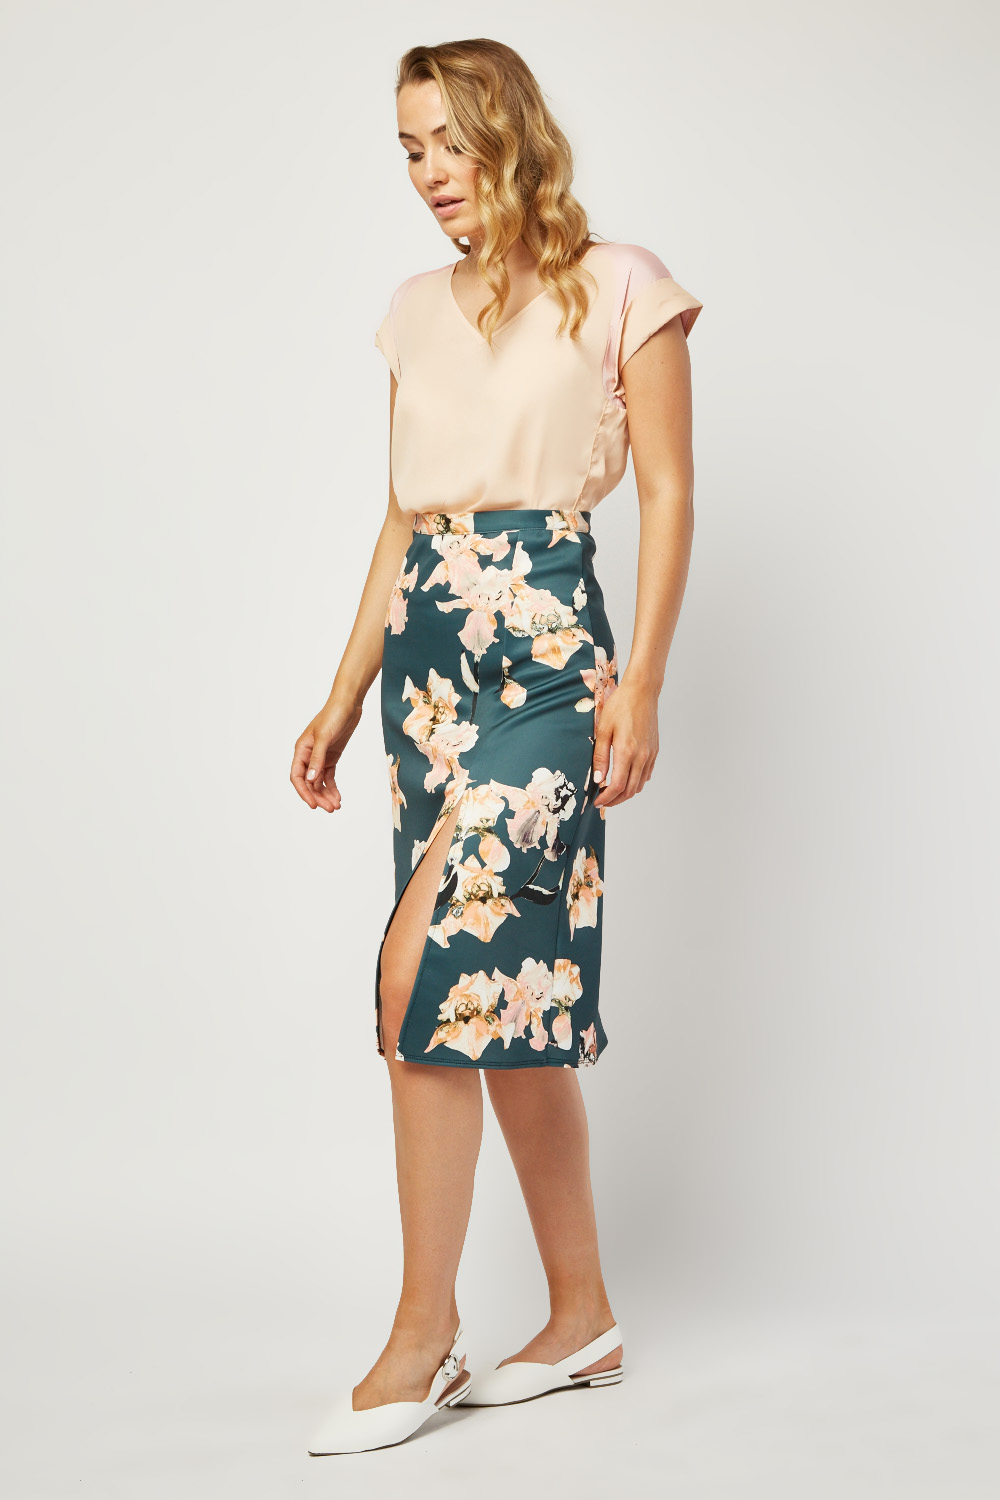 Slit Front Floral Print Skirt - Just $7